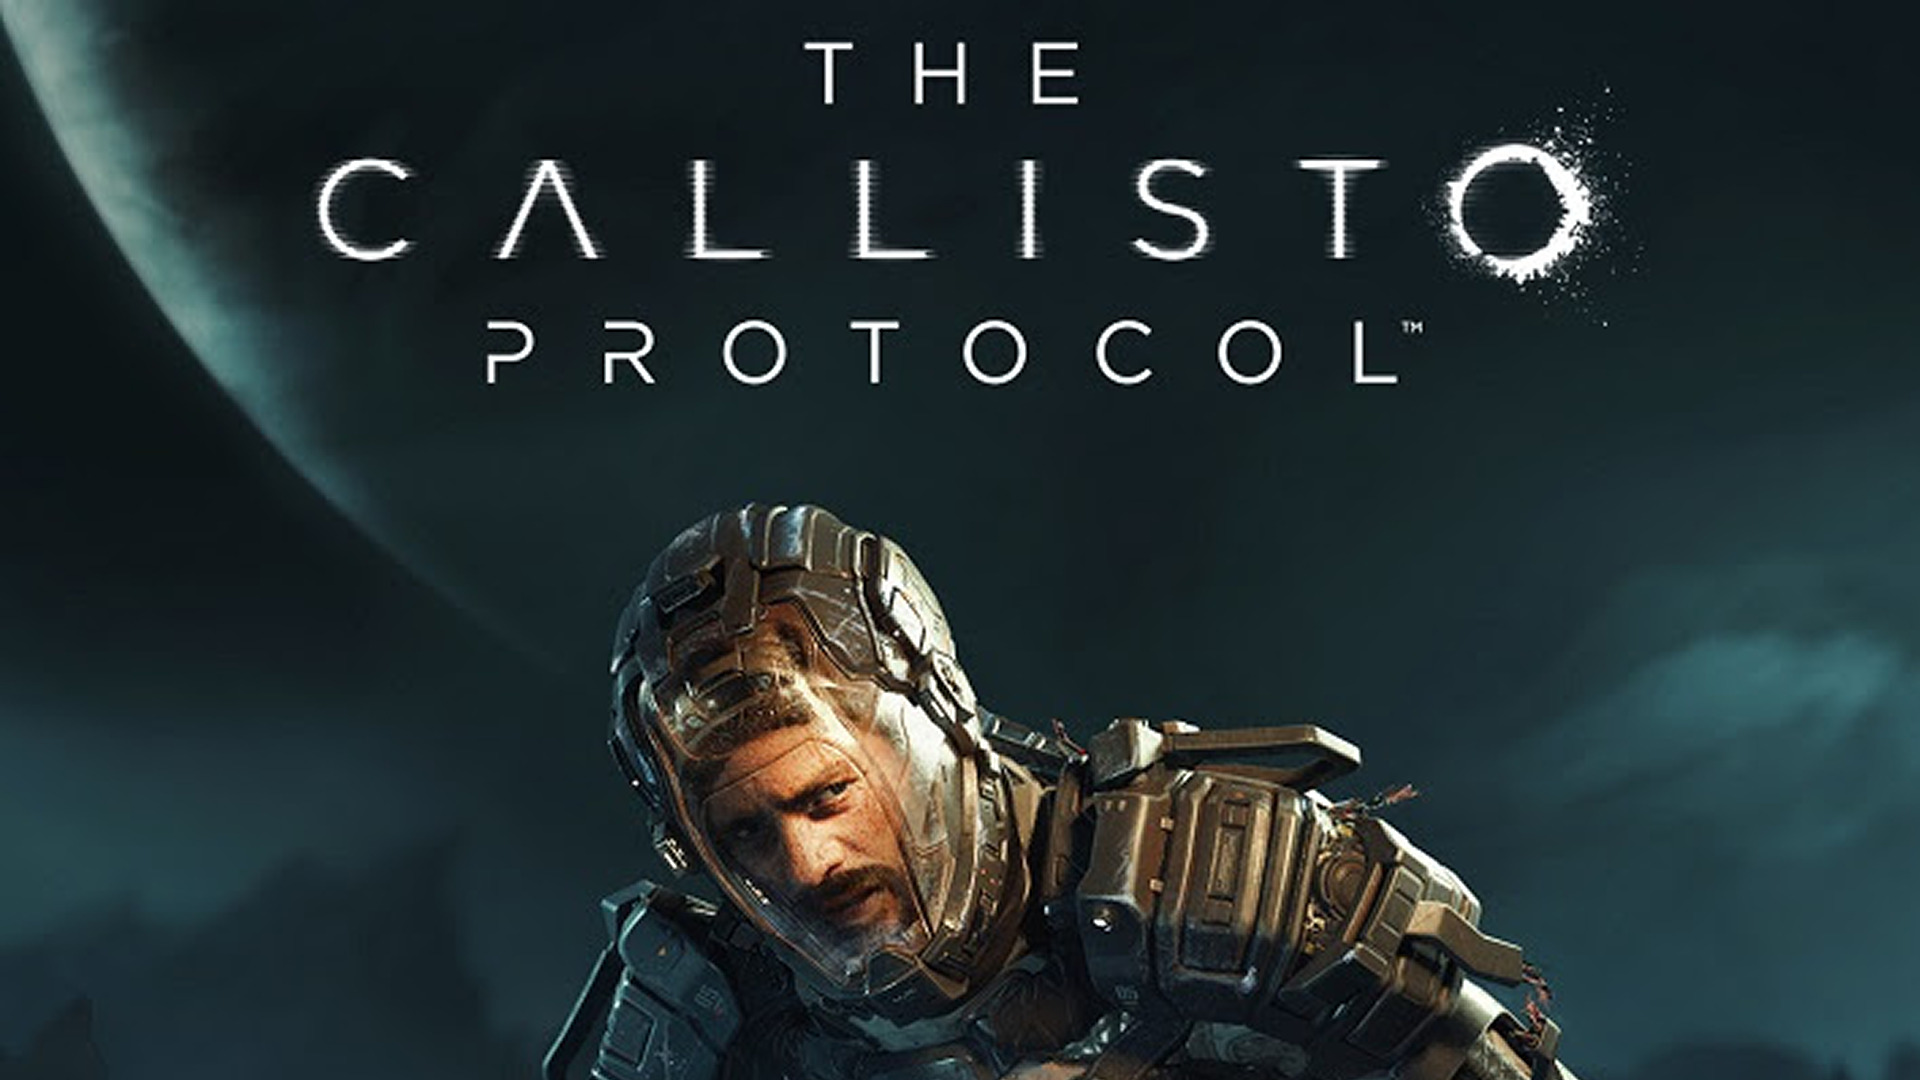 EvilSpecial  Análise: The Callisto Protocol - EvilHazard